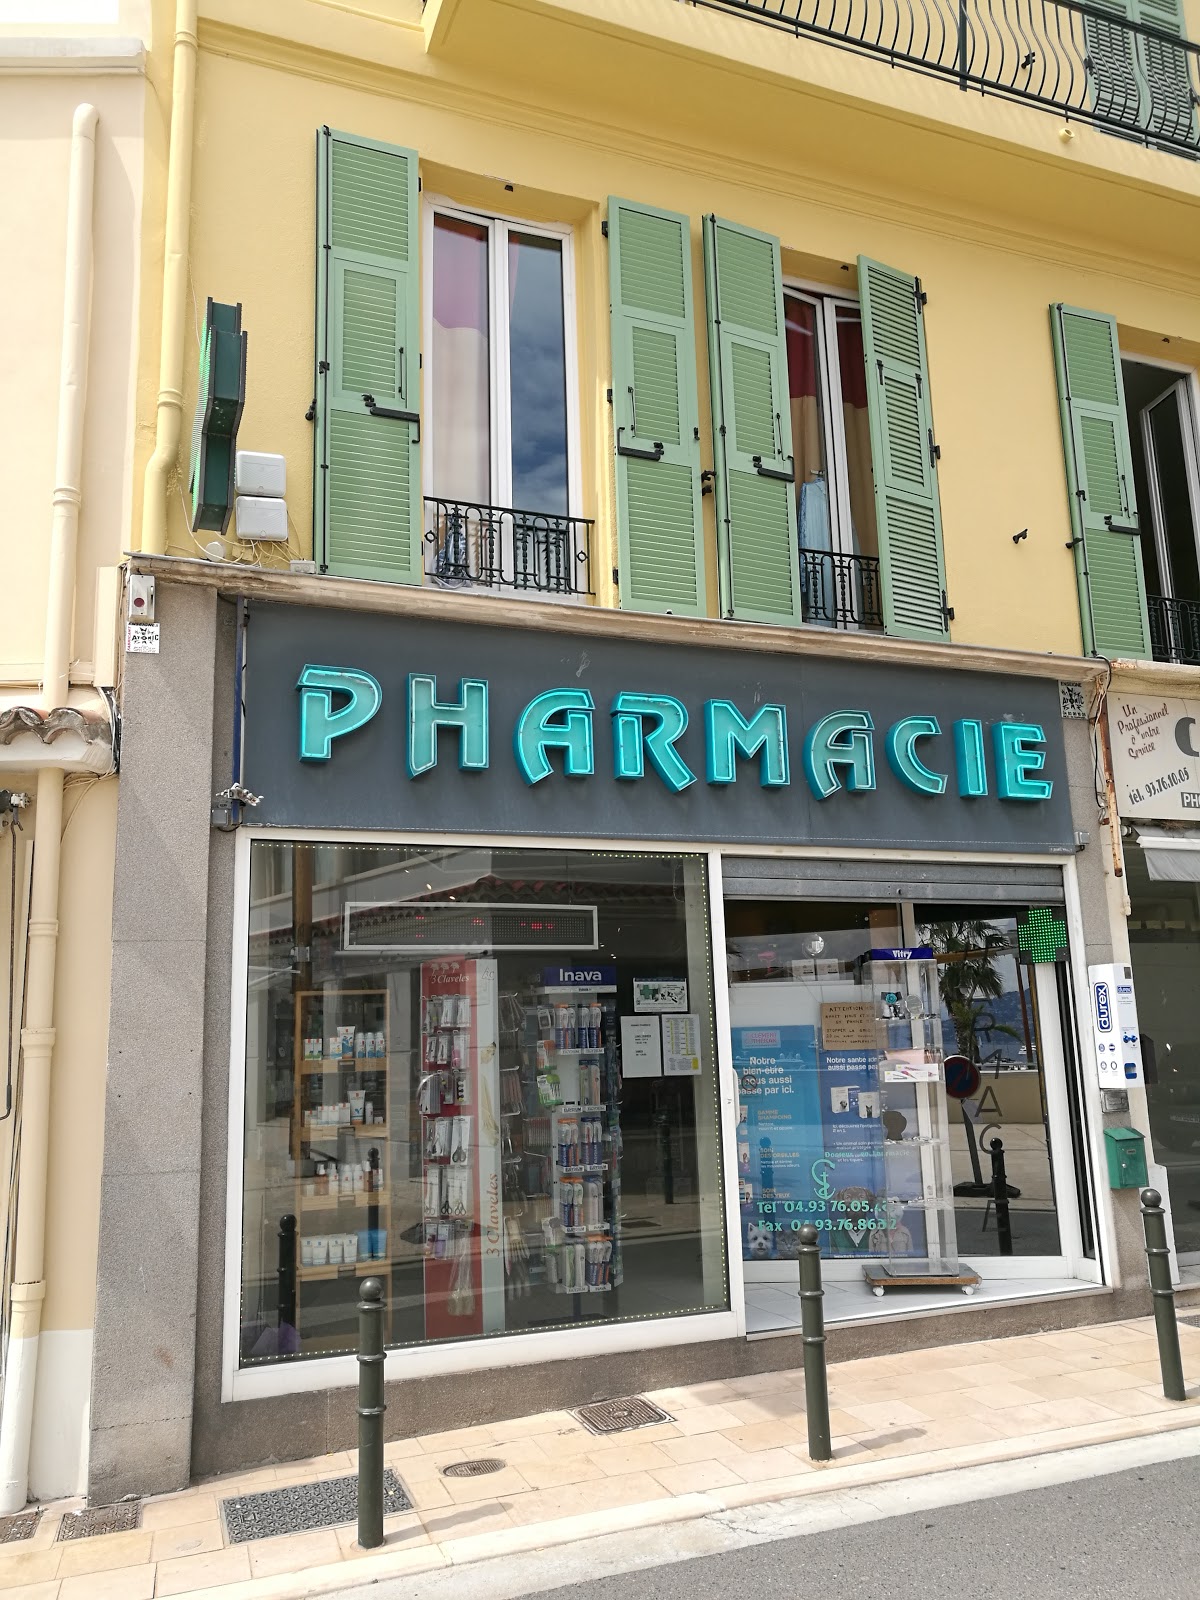 Pharmacie Saint Jean Village